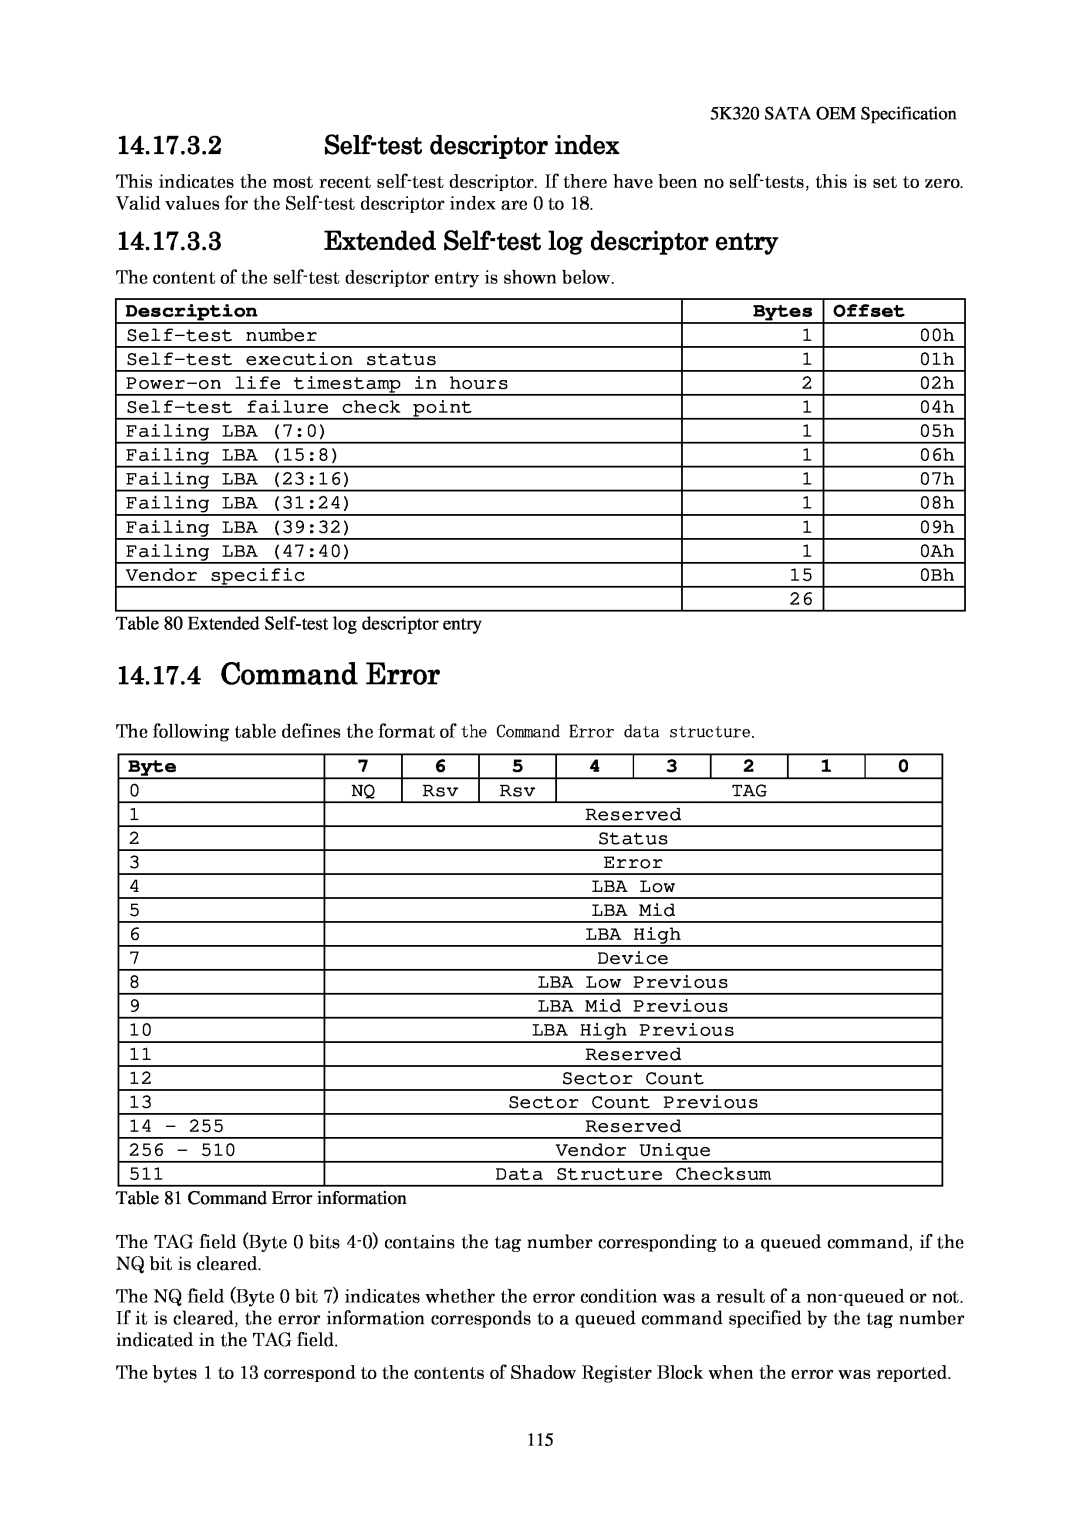 Hitachi HTS543280L9SA00 manual 14.17.4Command Error, 14.17.3.2Self-testdescriptor index, Description, Bytes, Offset 